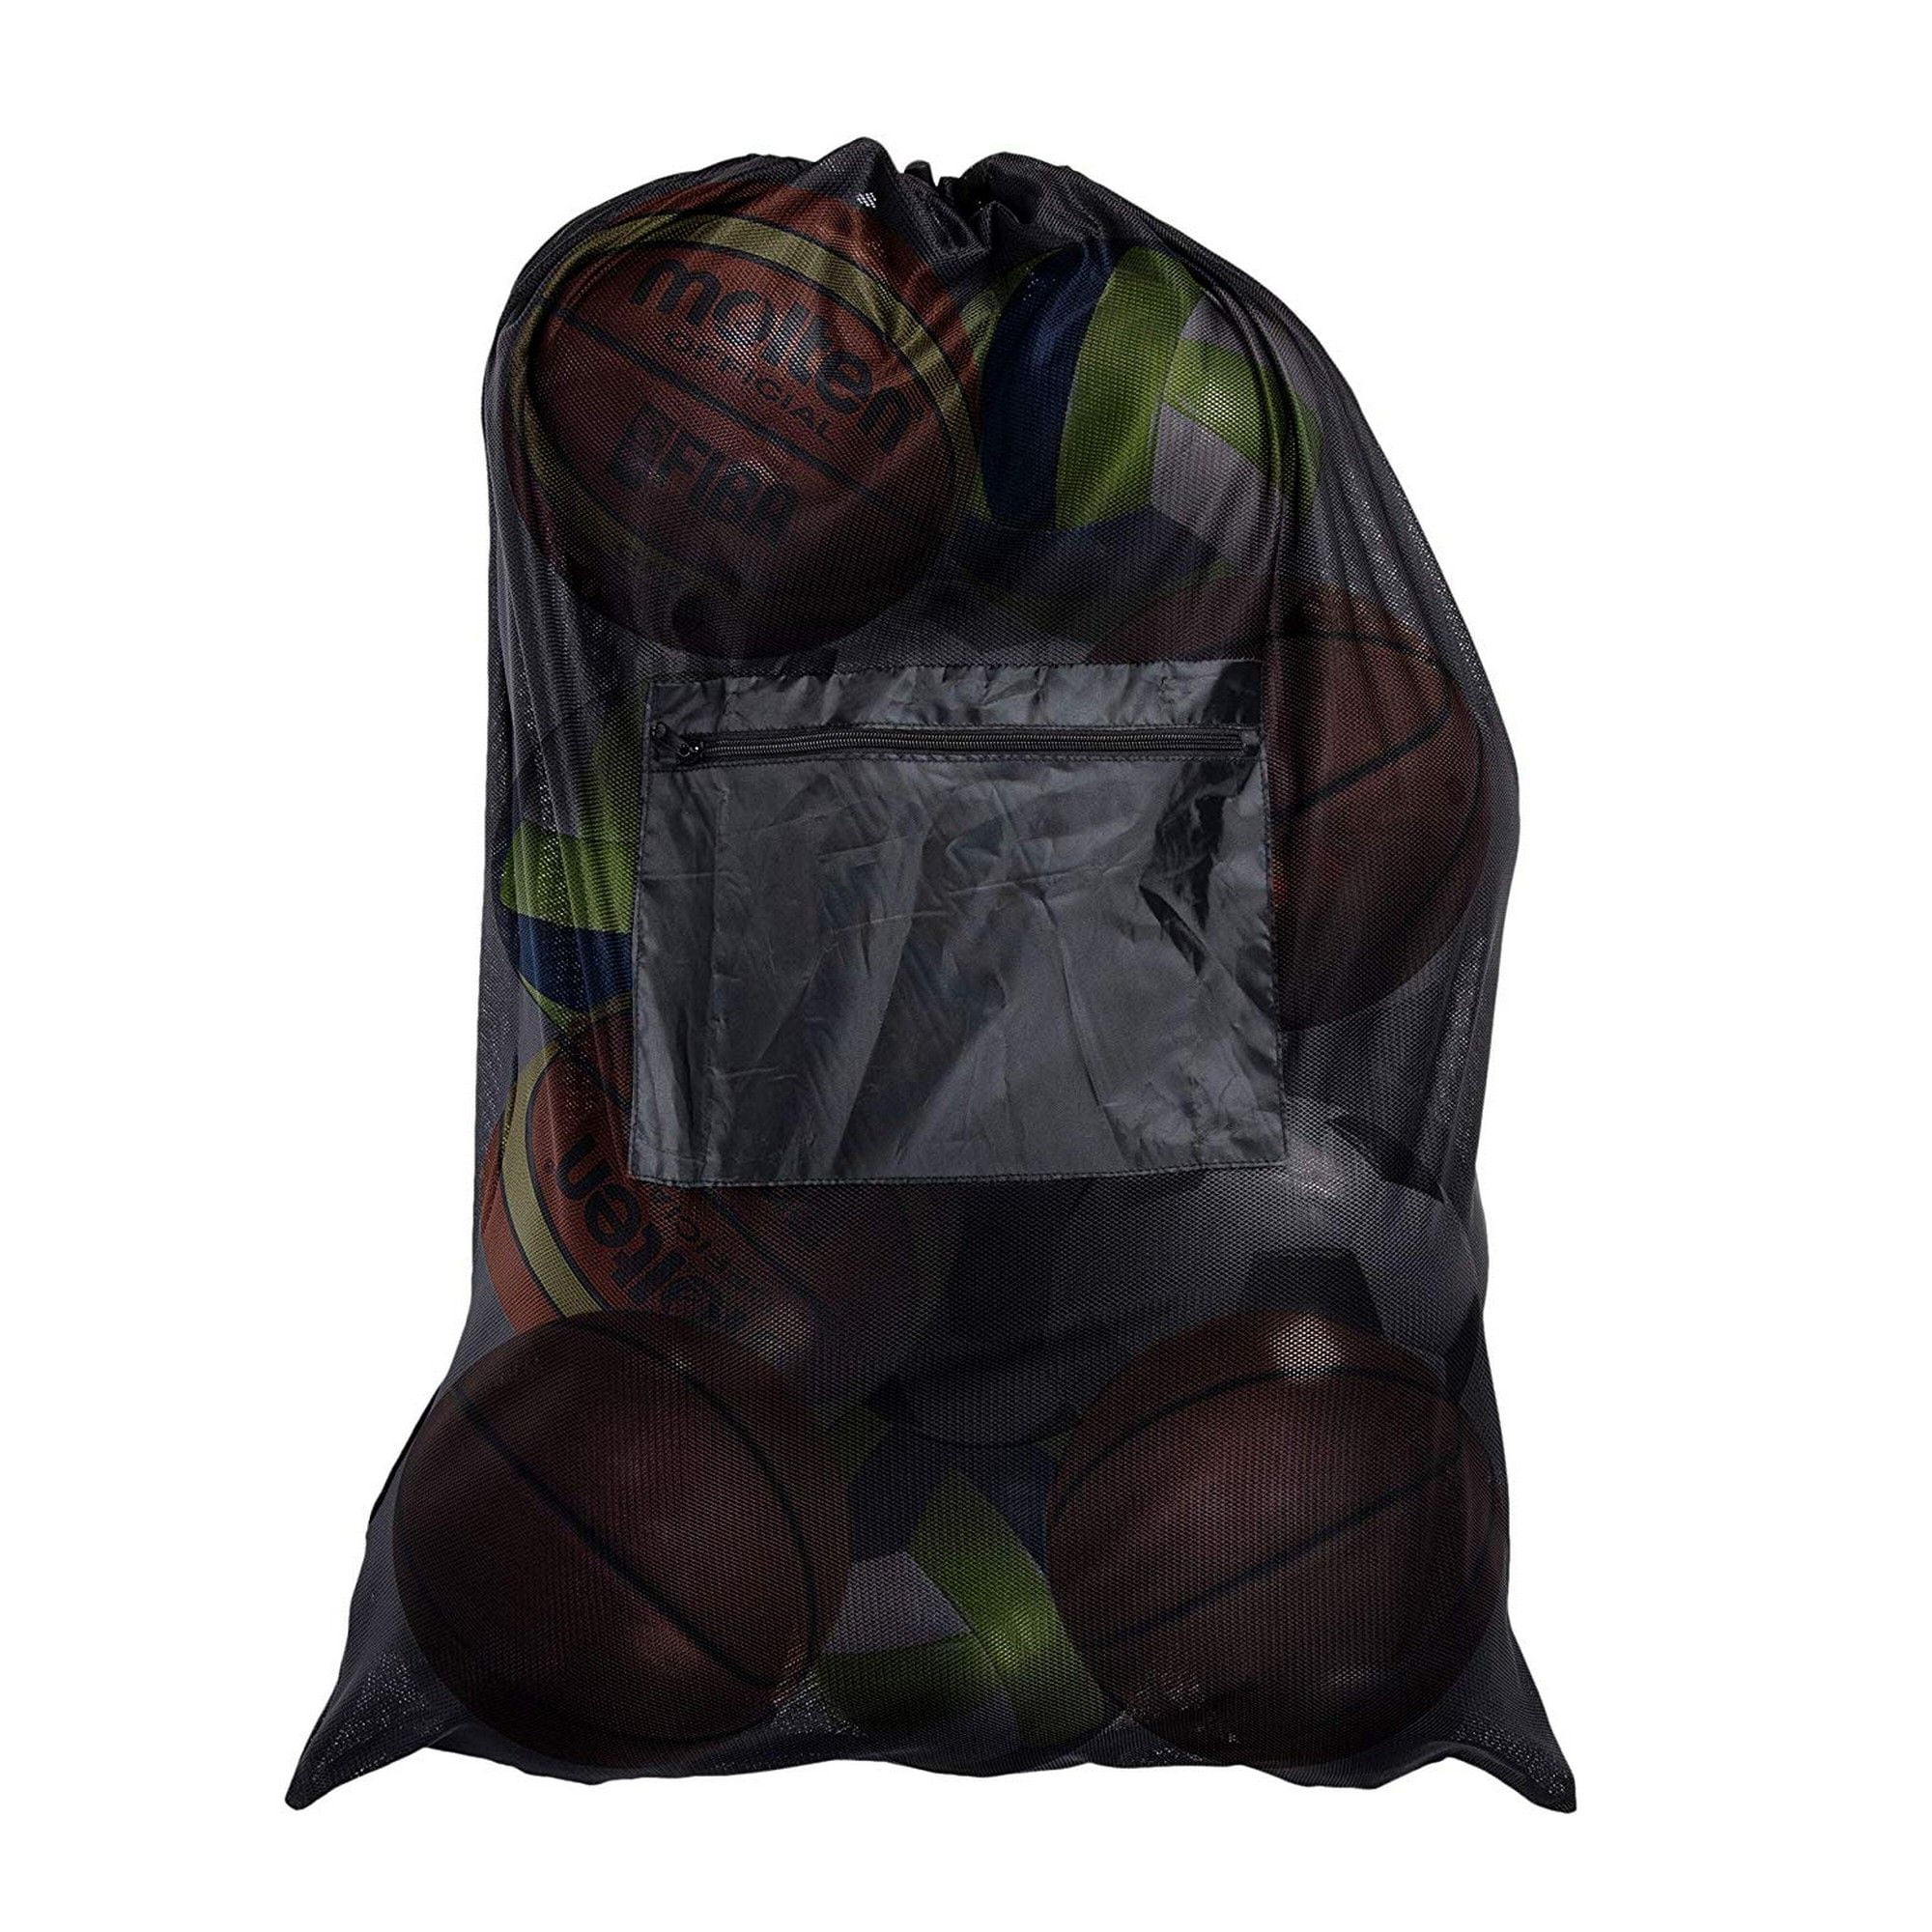 mesh basketball bag